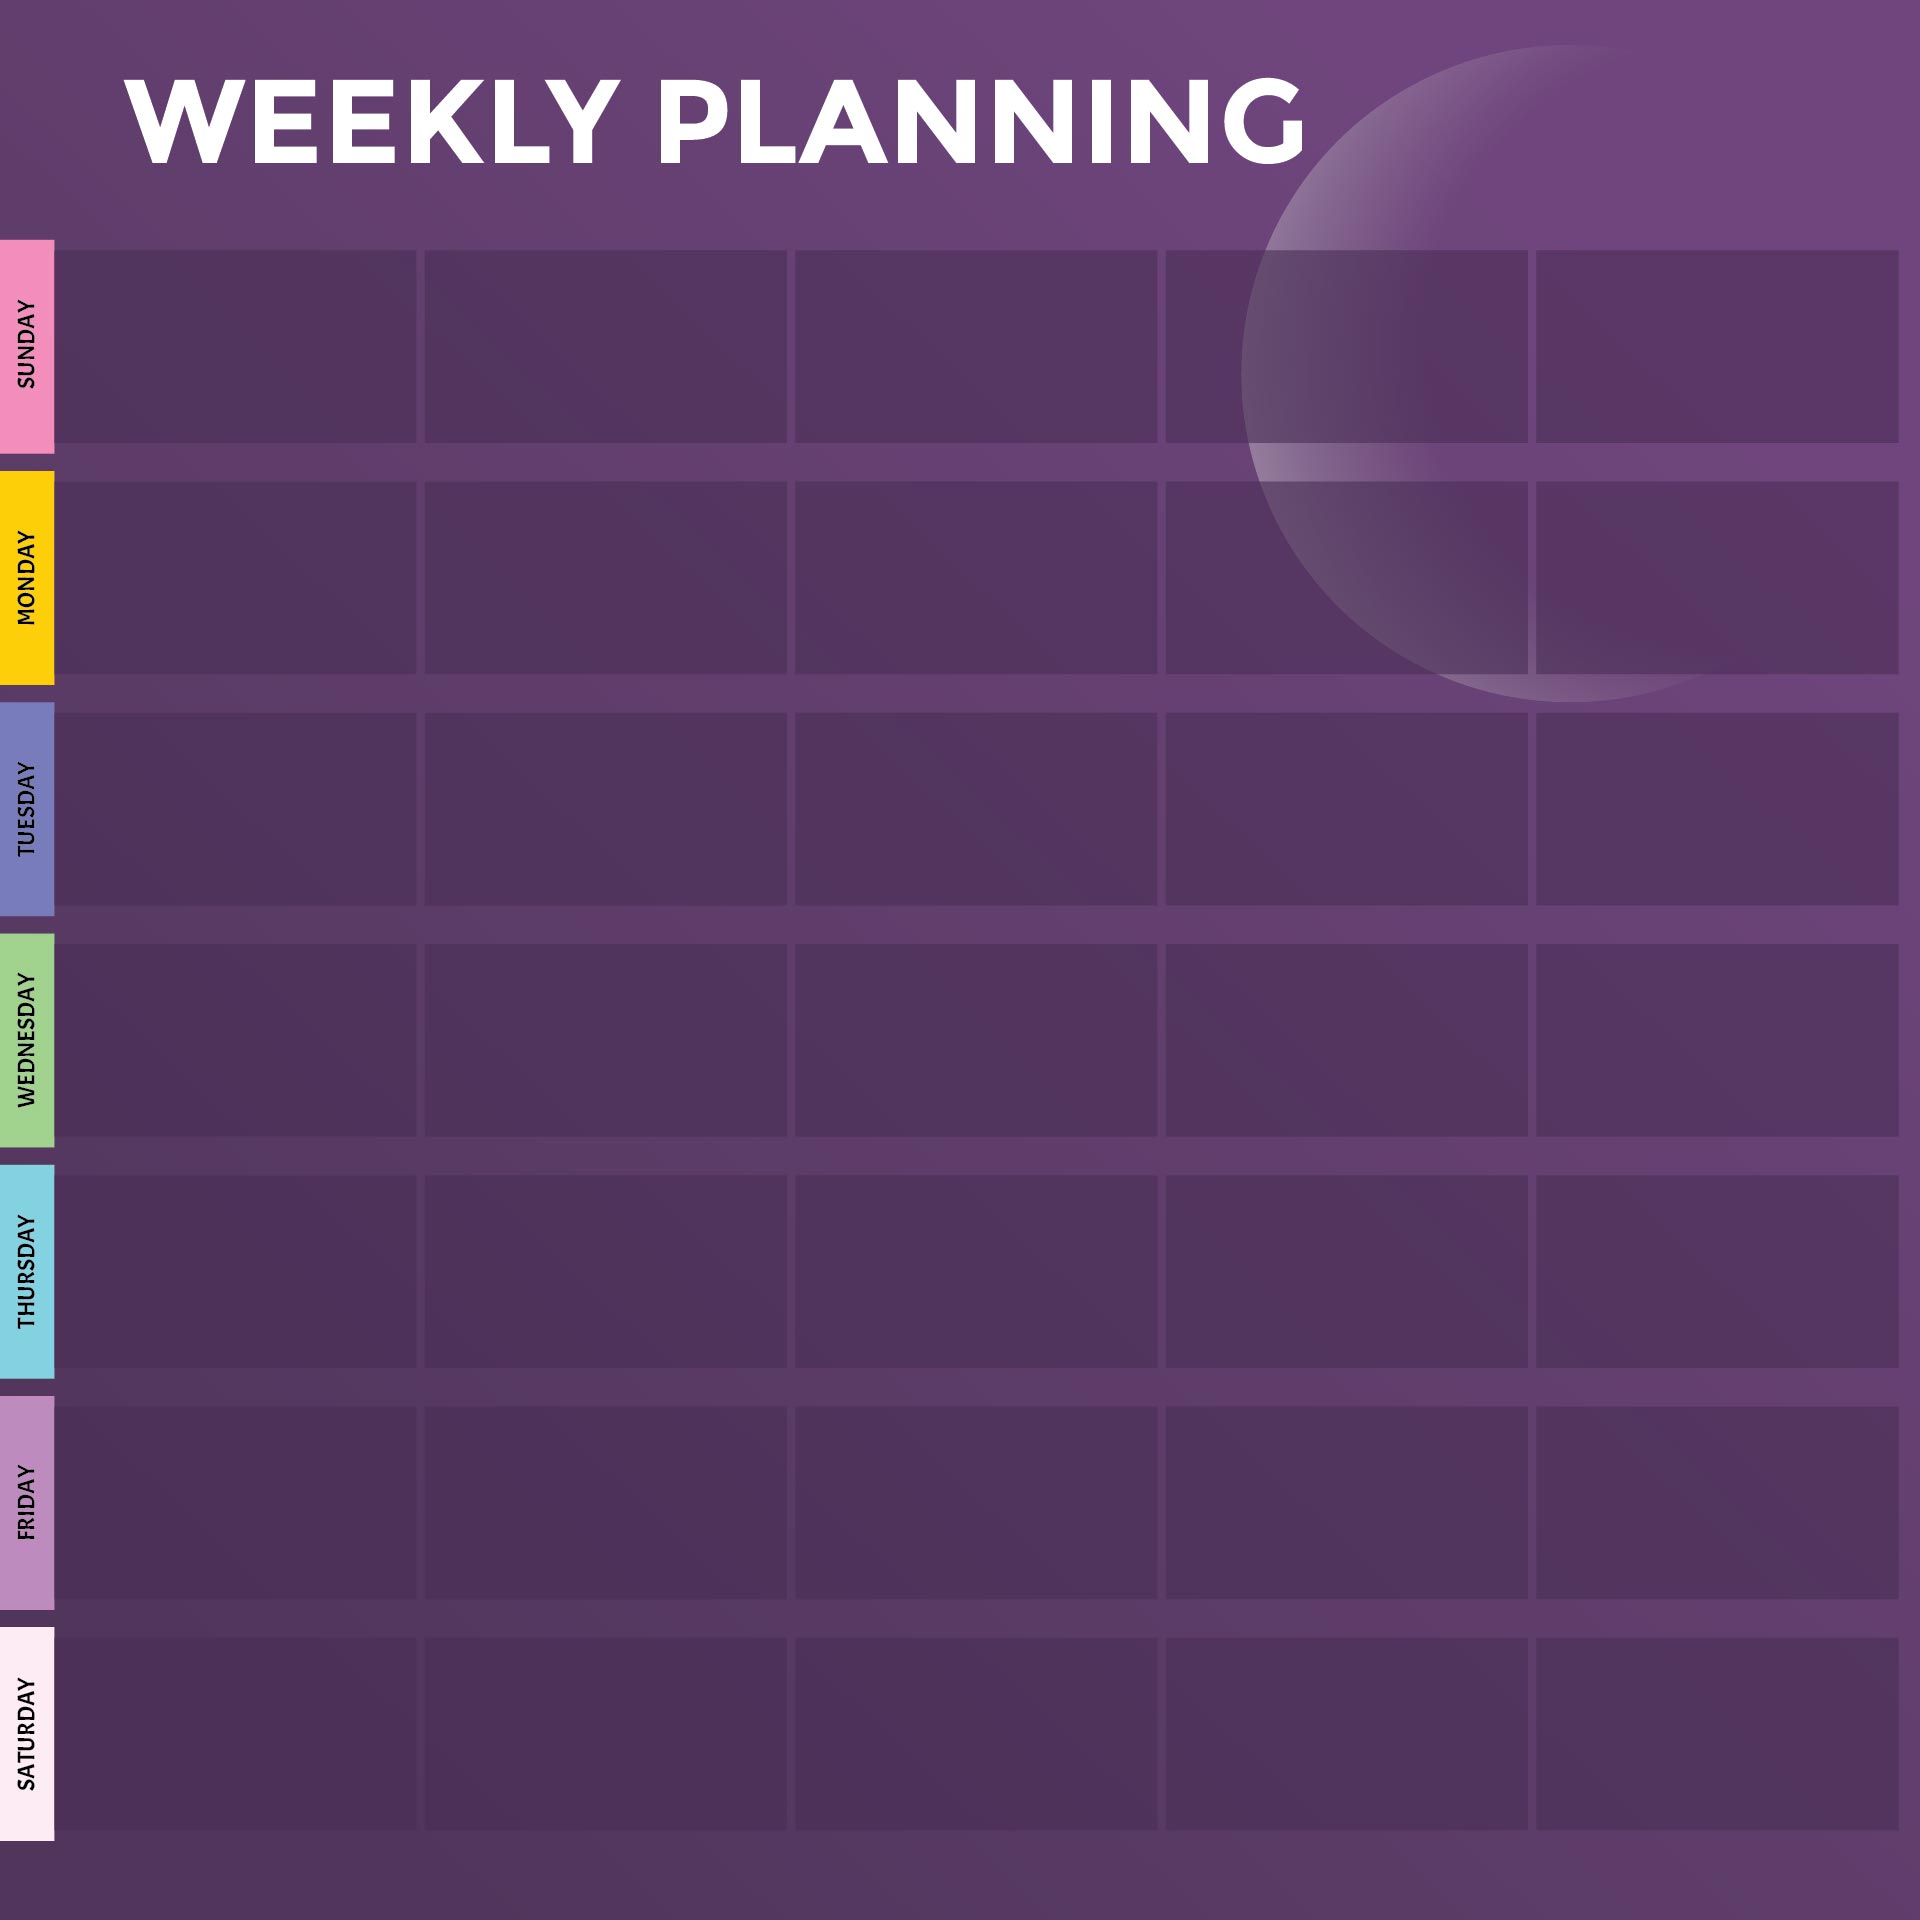 Weekly Planner Calendar Template